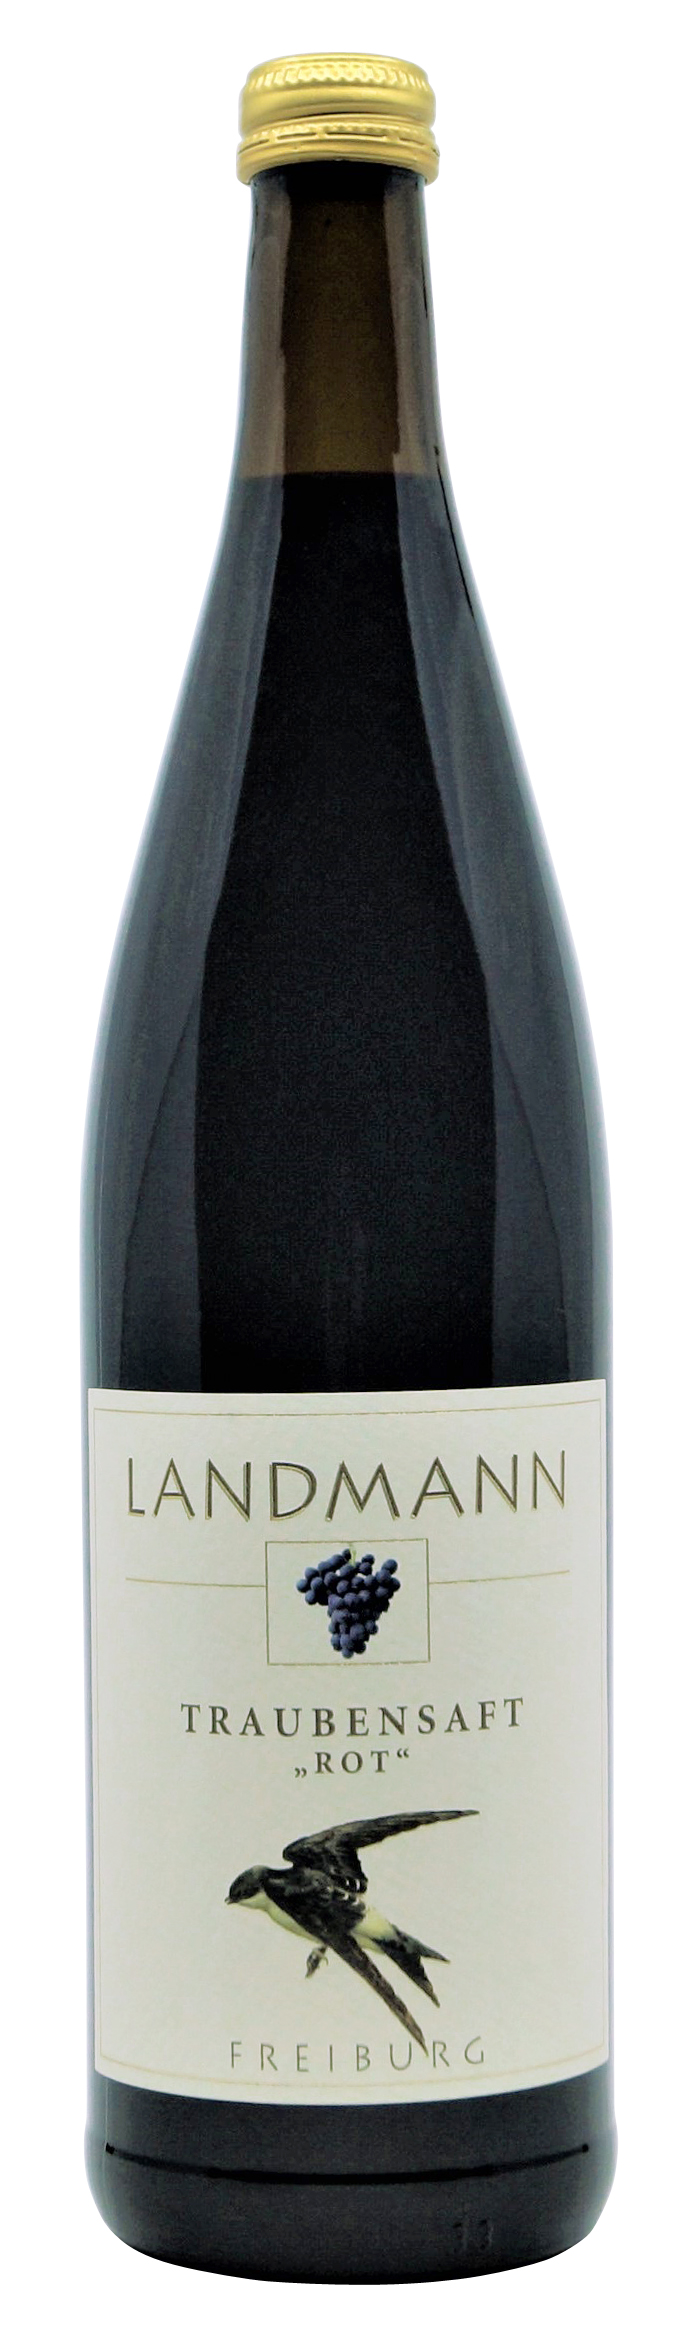 Traubensaft rot von Landmann aus Waltershofen, 0,75 l Flasche ( 6,40 €/ Liter)